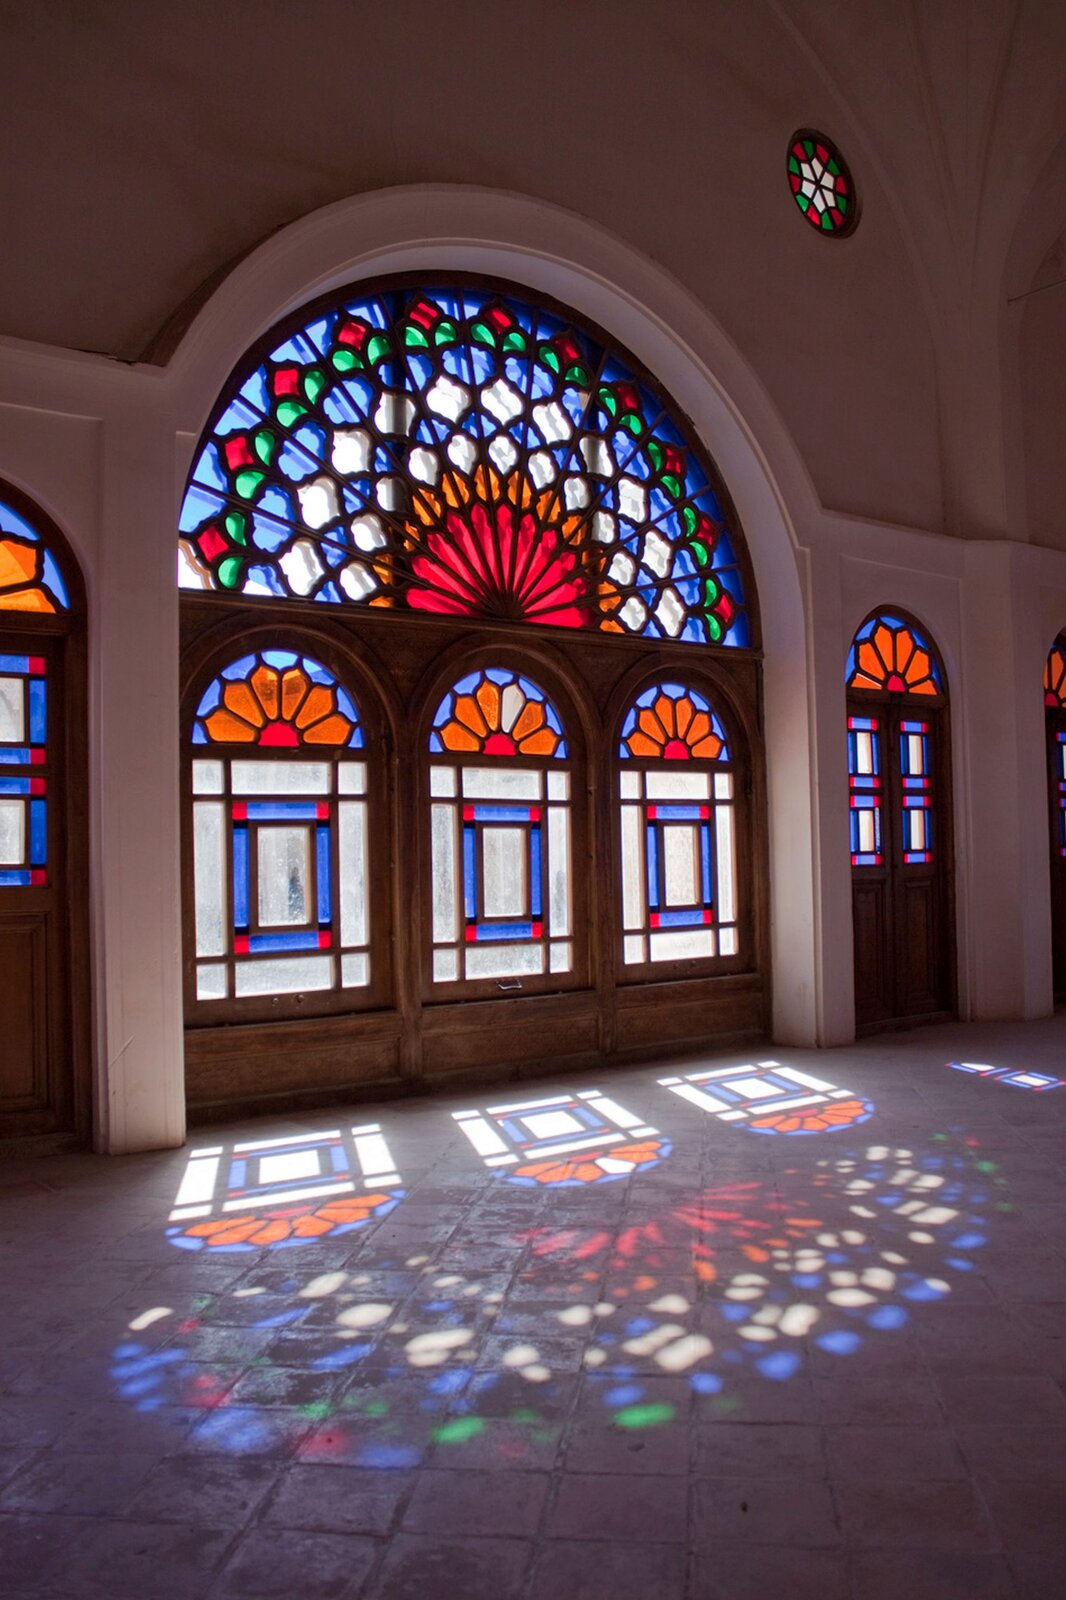 Zdjęcie przedstawia ścianę wejściową do kościoła z głównym i dwoma bocznymi wejściami, ozdobionymi witrażami. Wpadające przez nie światło odbija się w posadzce, tworząc barwne odbicie wejścia.